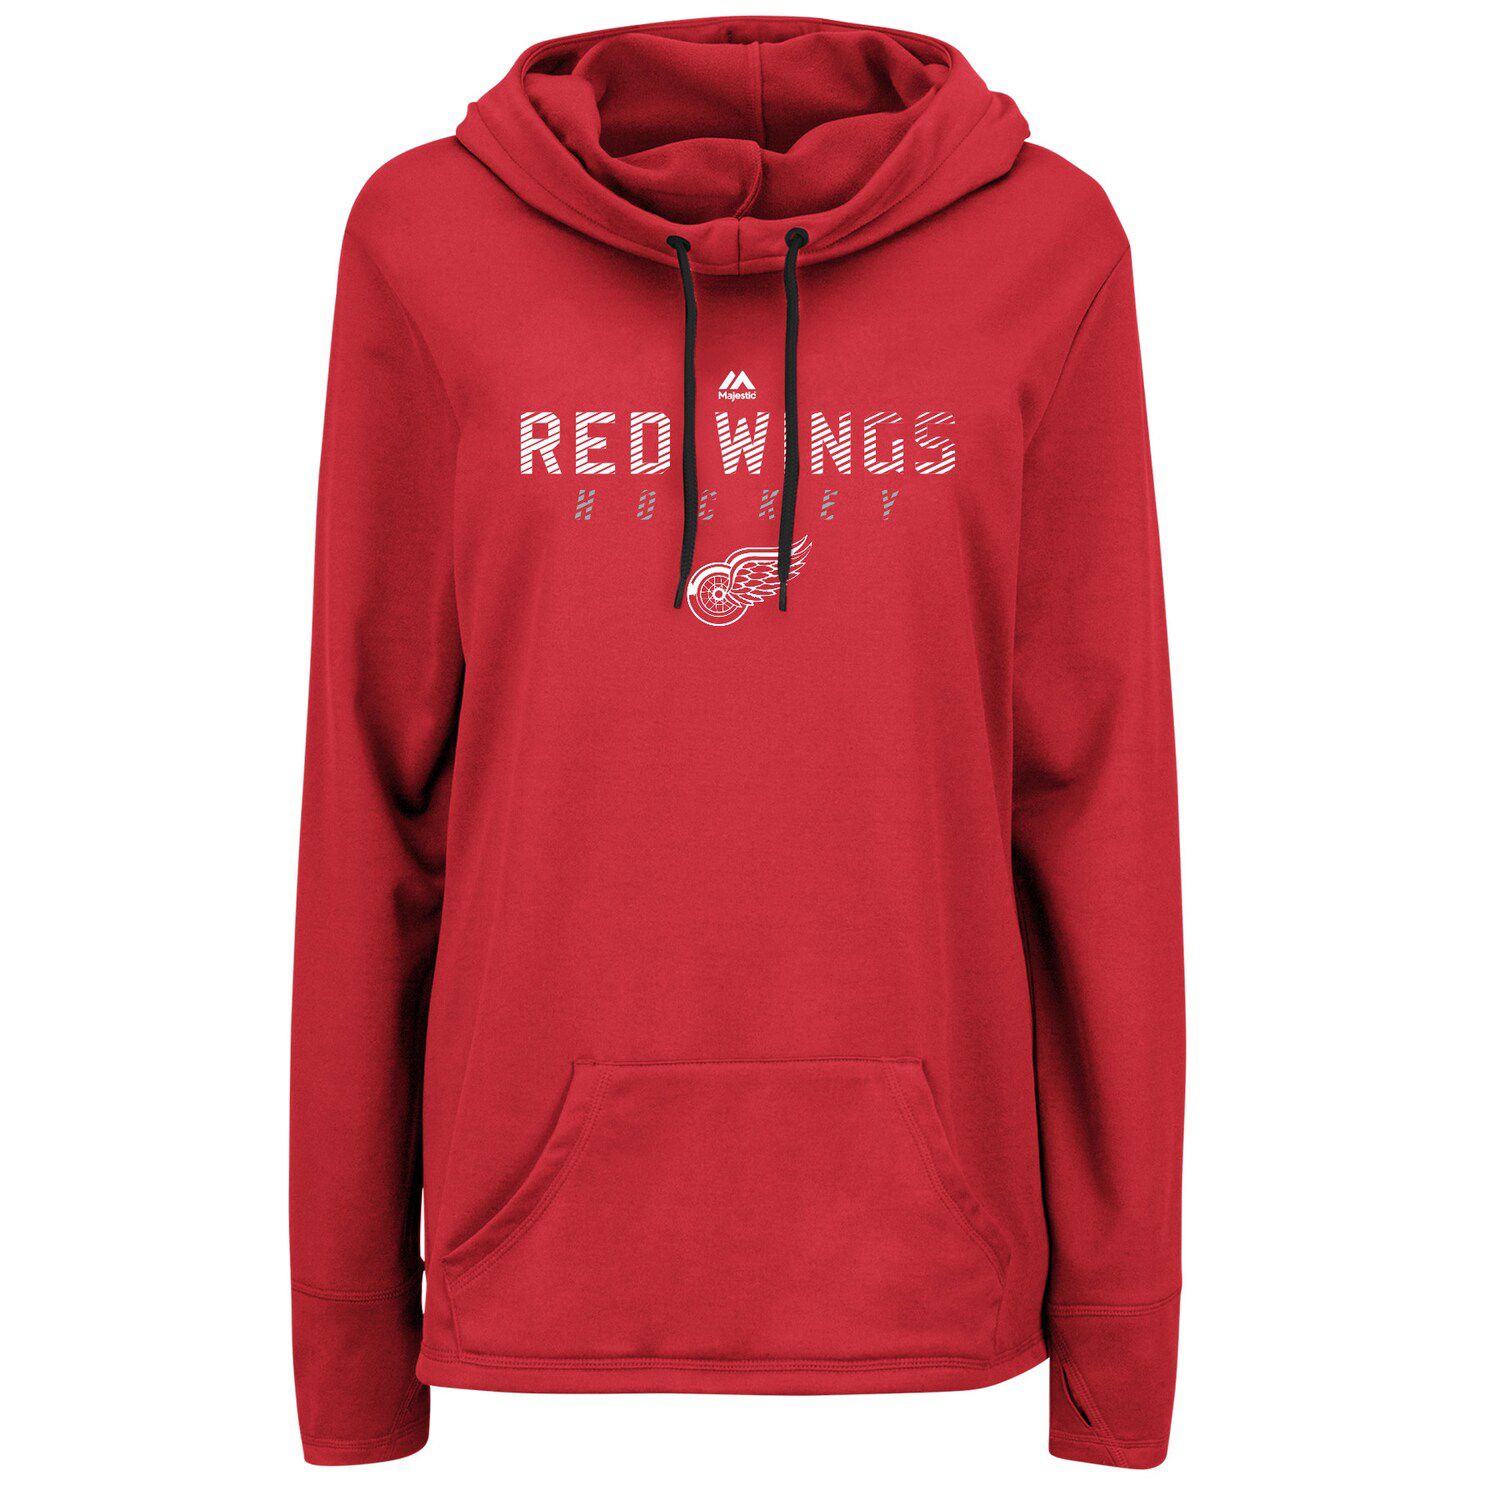 red wings hoodie women's